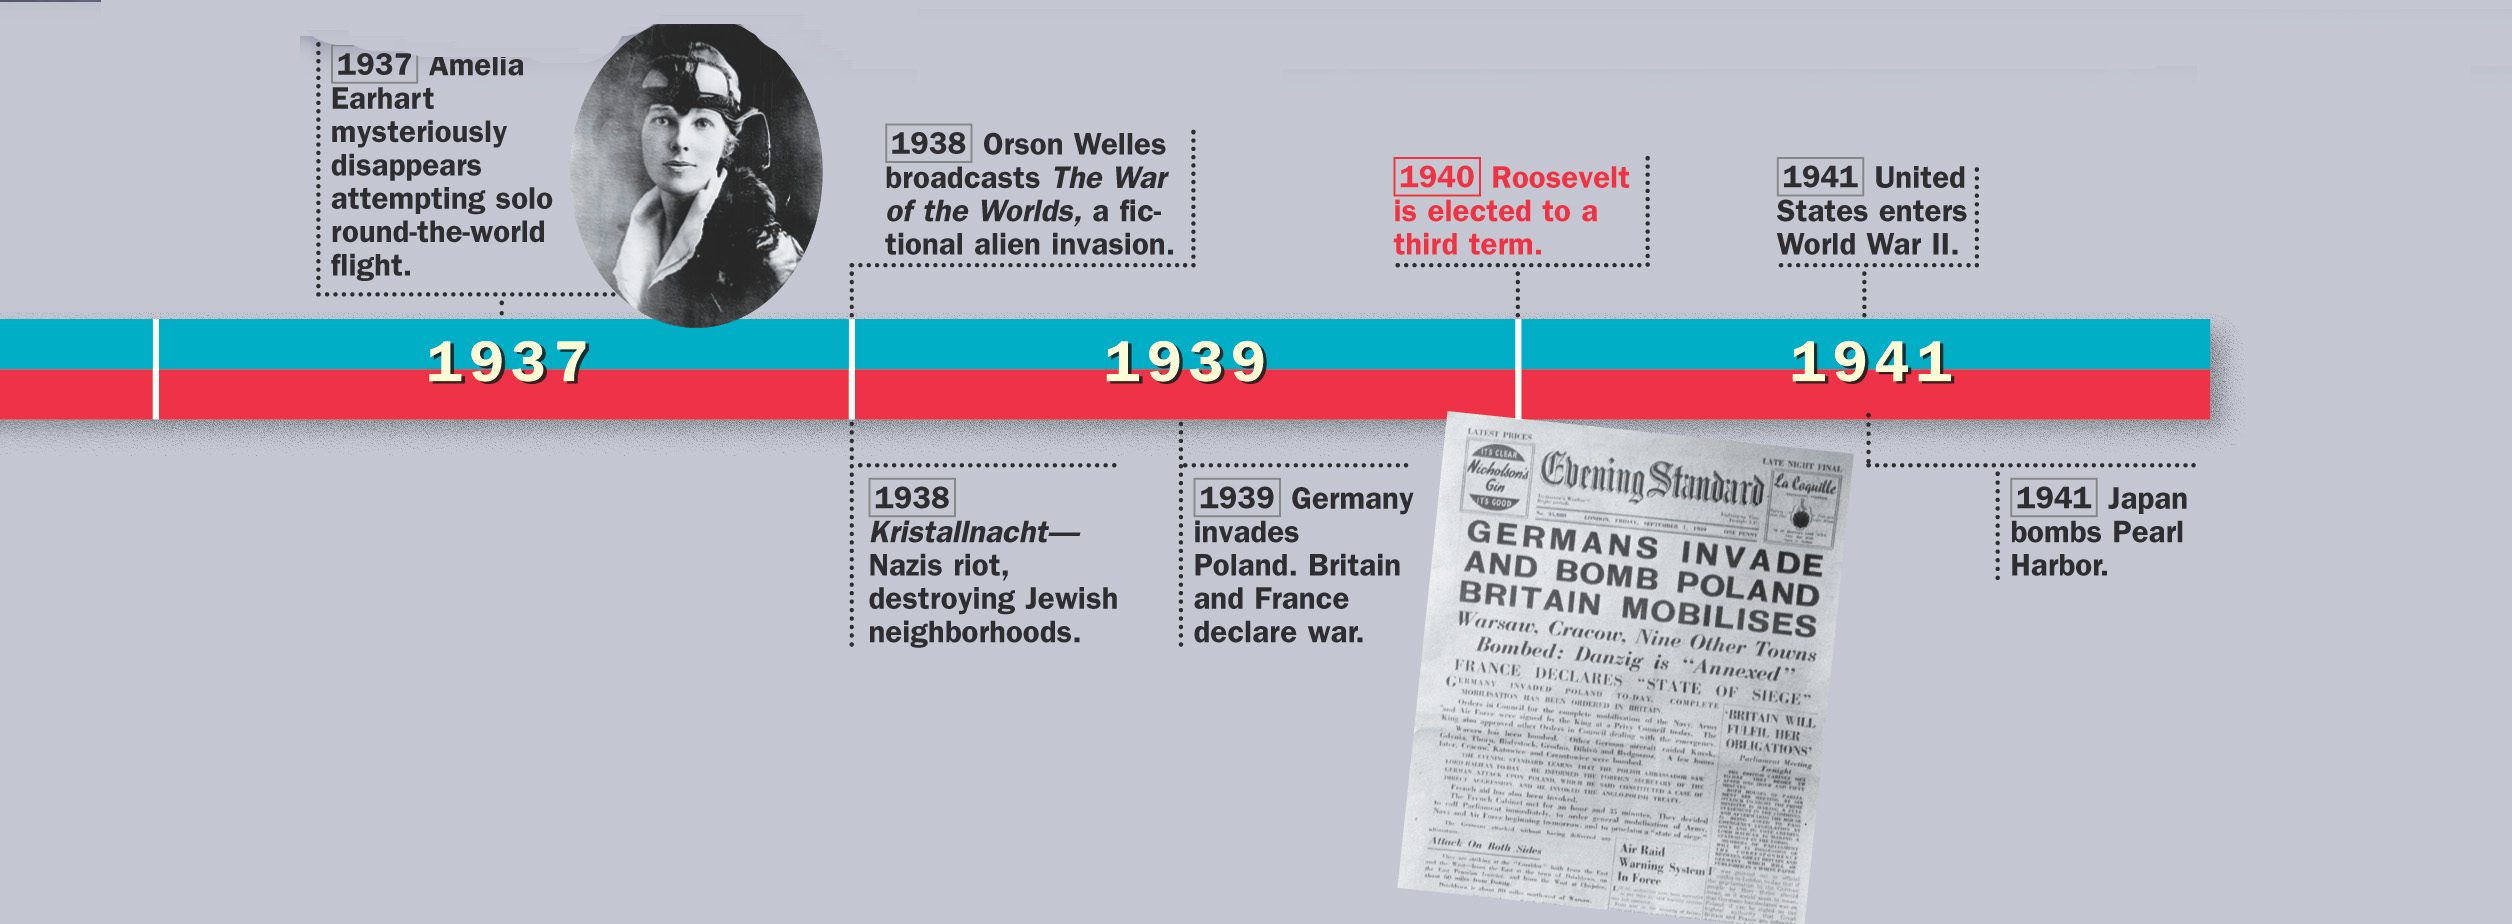 Timeline: 1937 - 1941